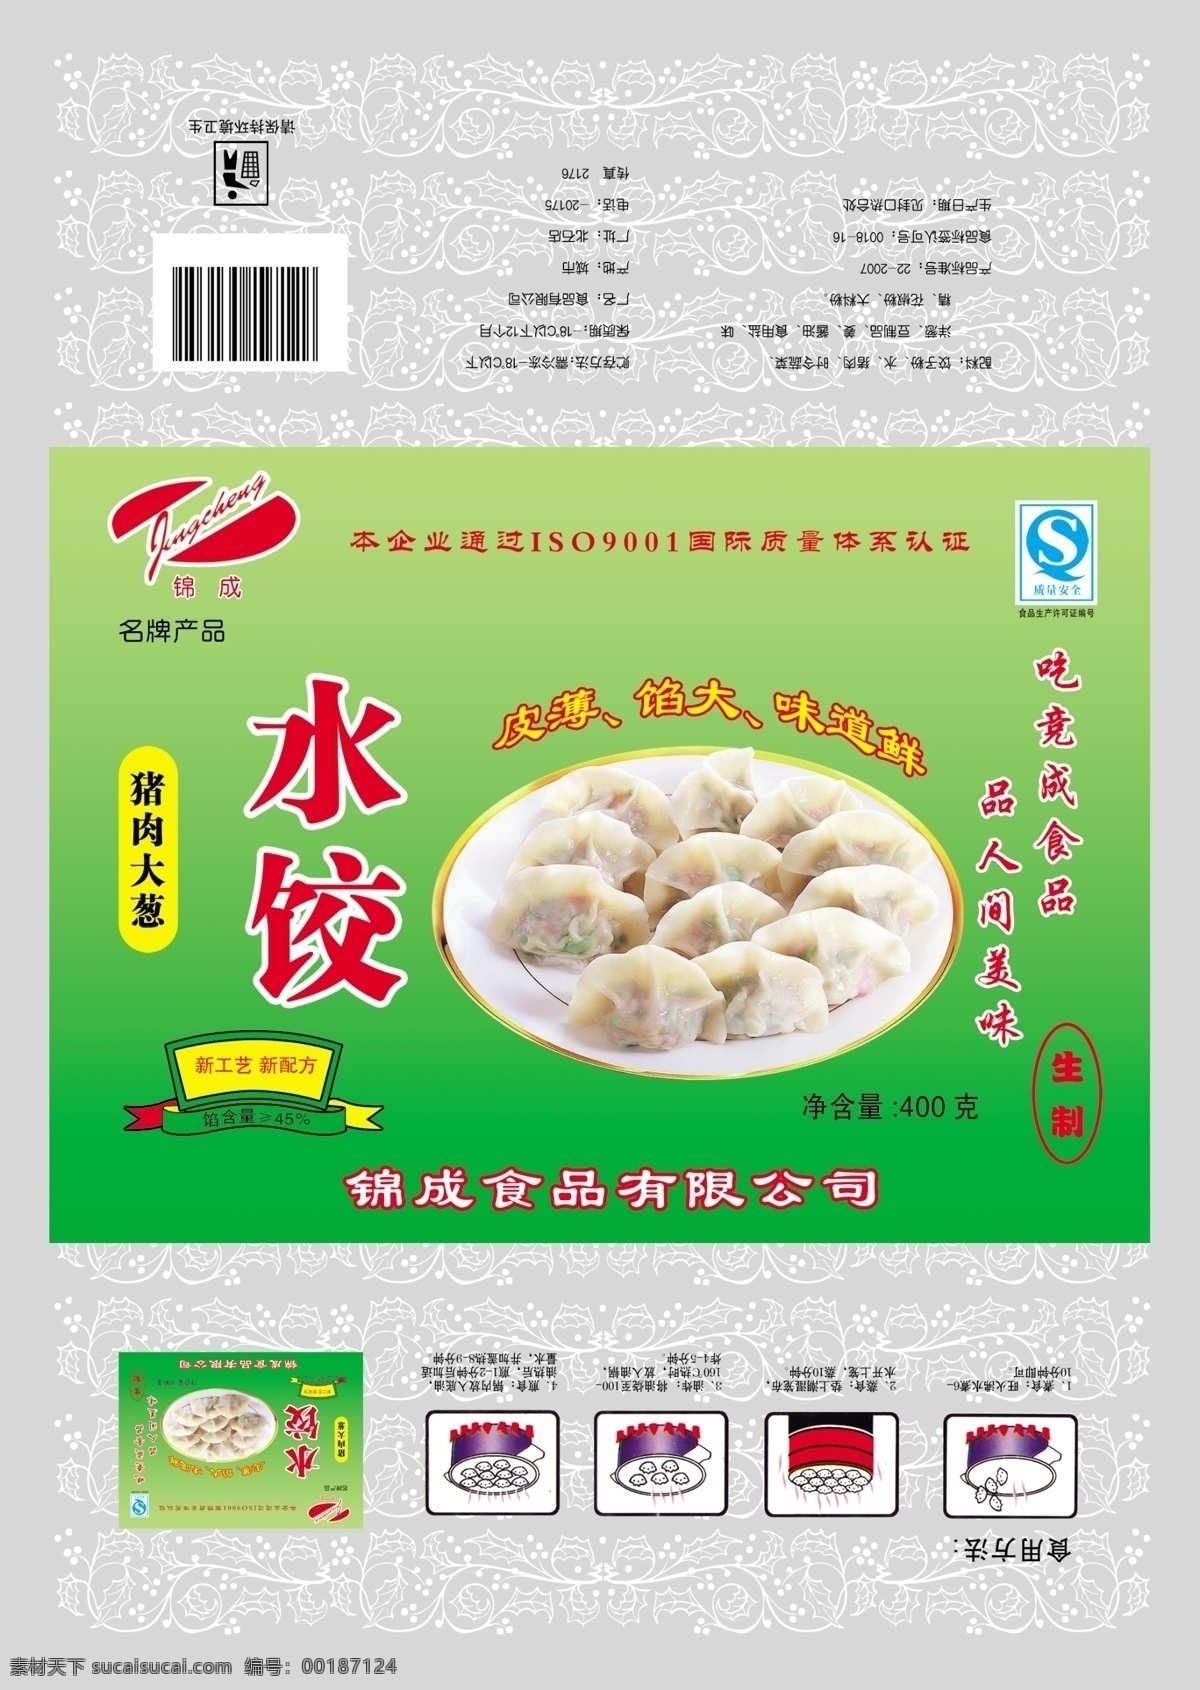 食品包装设计 水饺包装 水饺 食用方法简图 小标 包装设计 广告设计模板 源文件